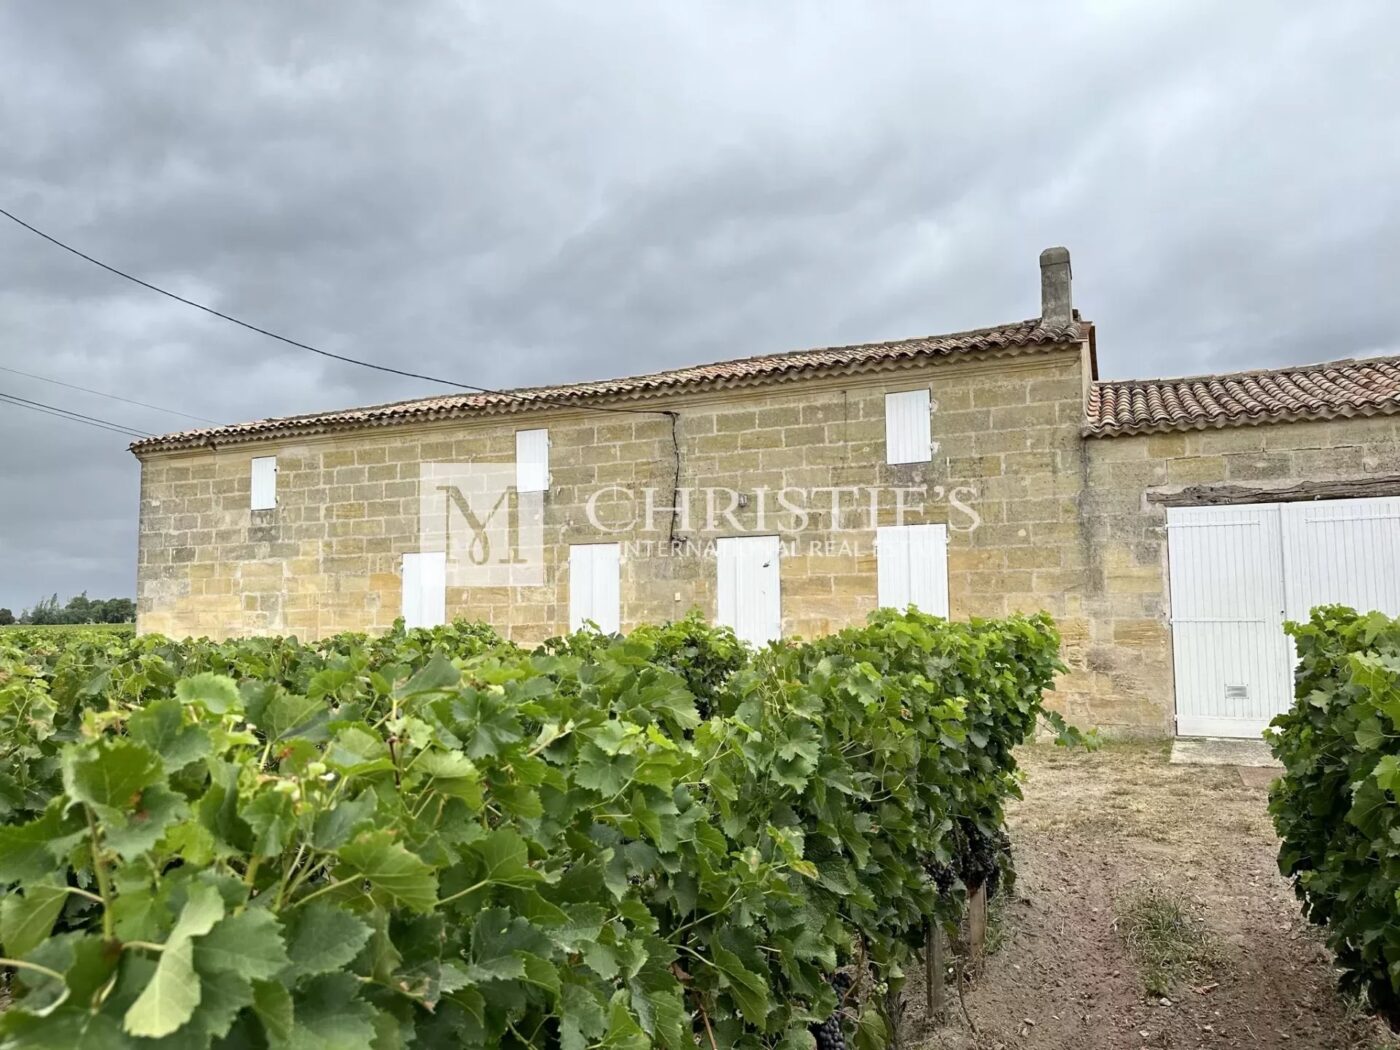 Propriété viticole rare en St Emilion Grand Cru & Bordeaux Supérieur